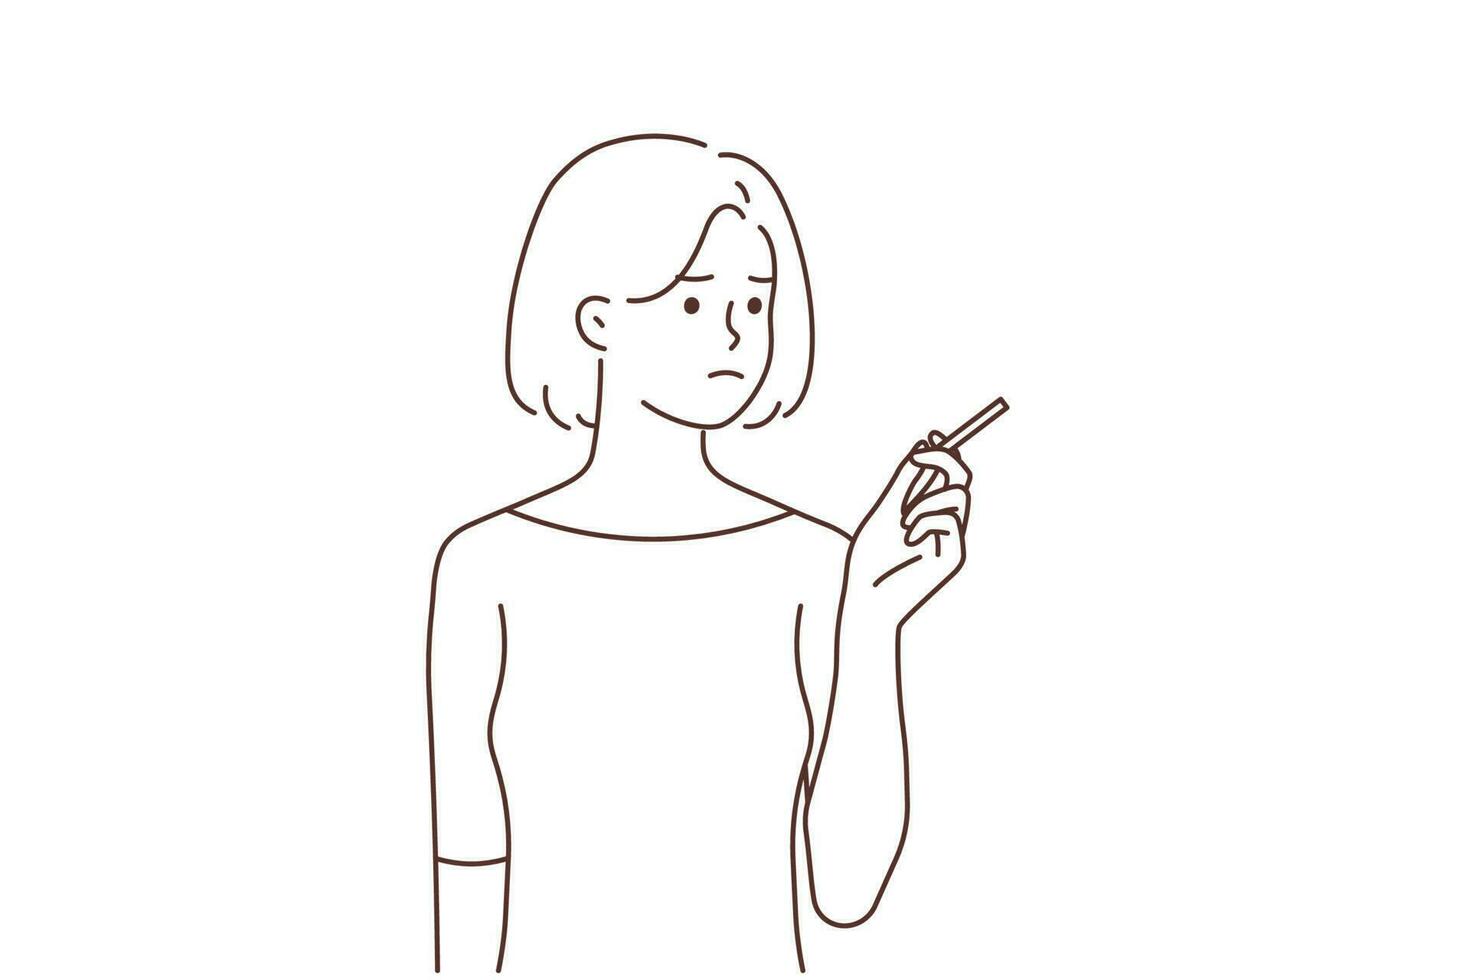 jung Frau Rauchen Zigarette. unzufrieden Mädchen haben Schlecht ungesund Gewohnheit. Raucher Konzept. Vektor Illustration.